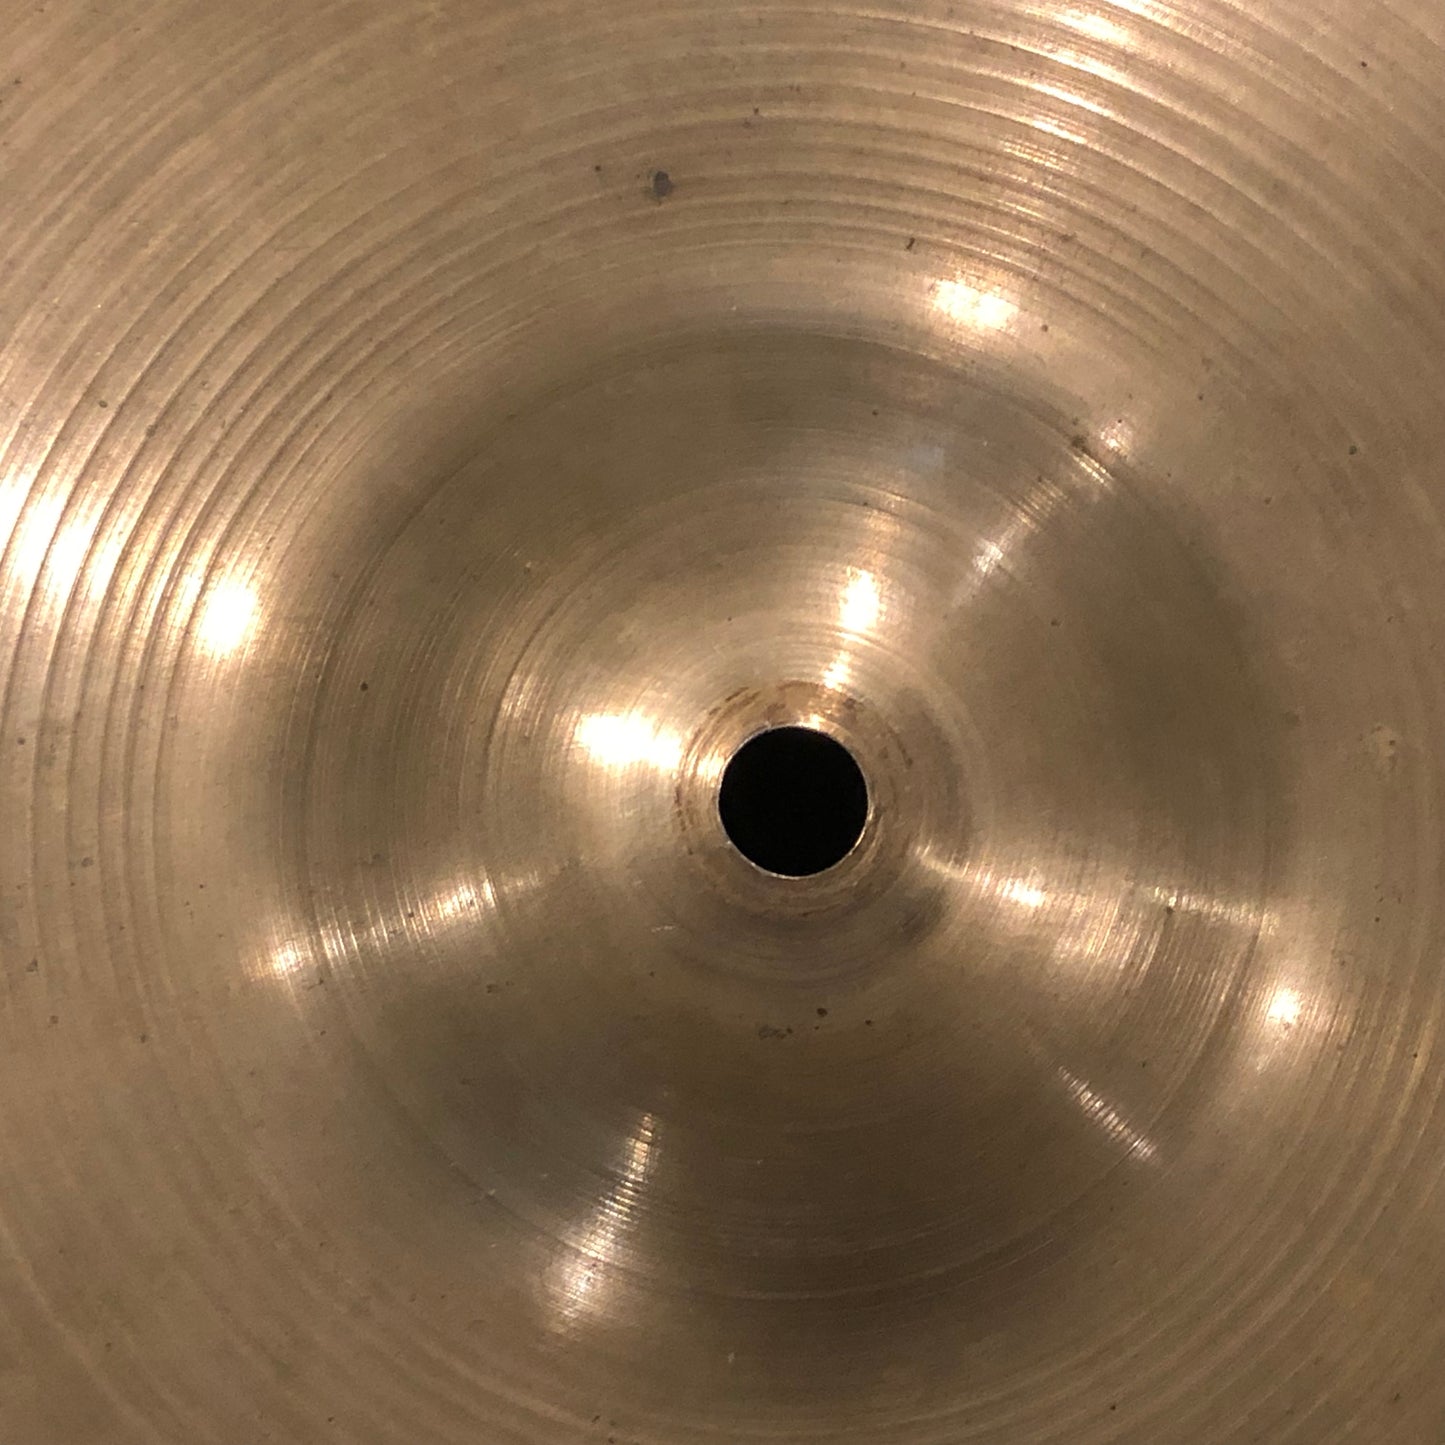 12" Zildjian A 1950s Hi-Hat Cymbal Set 508/534g #741